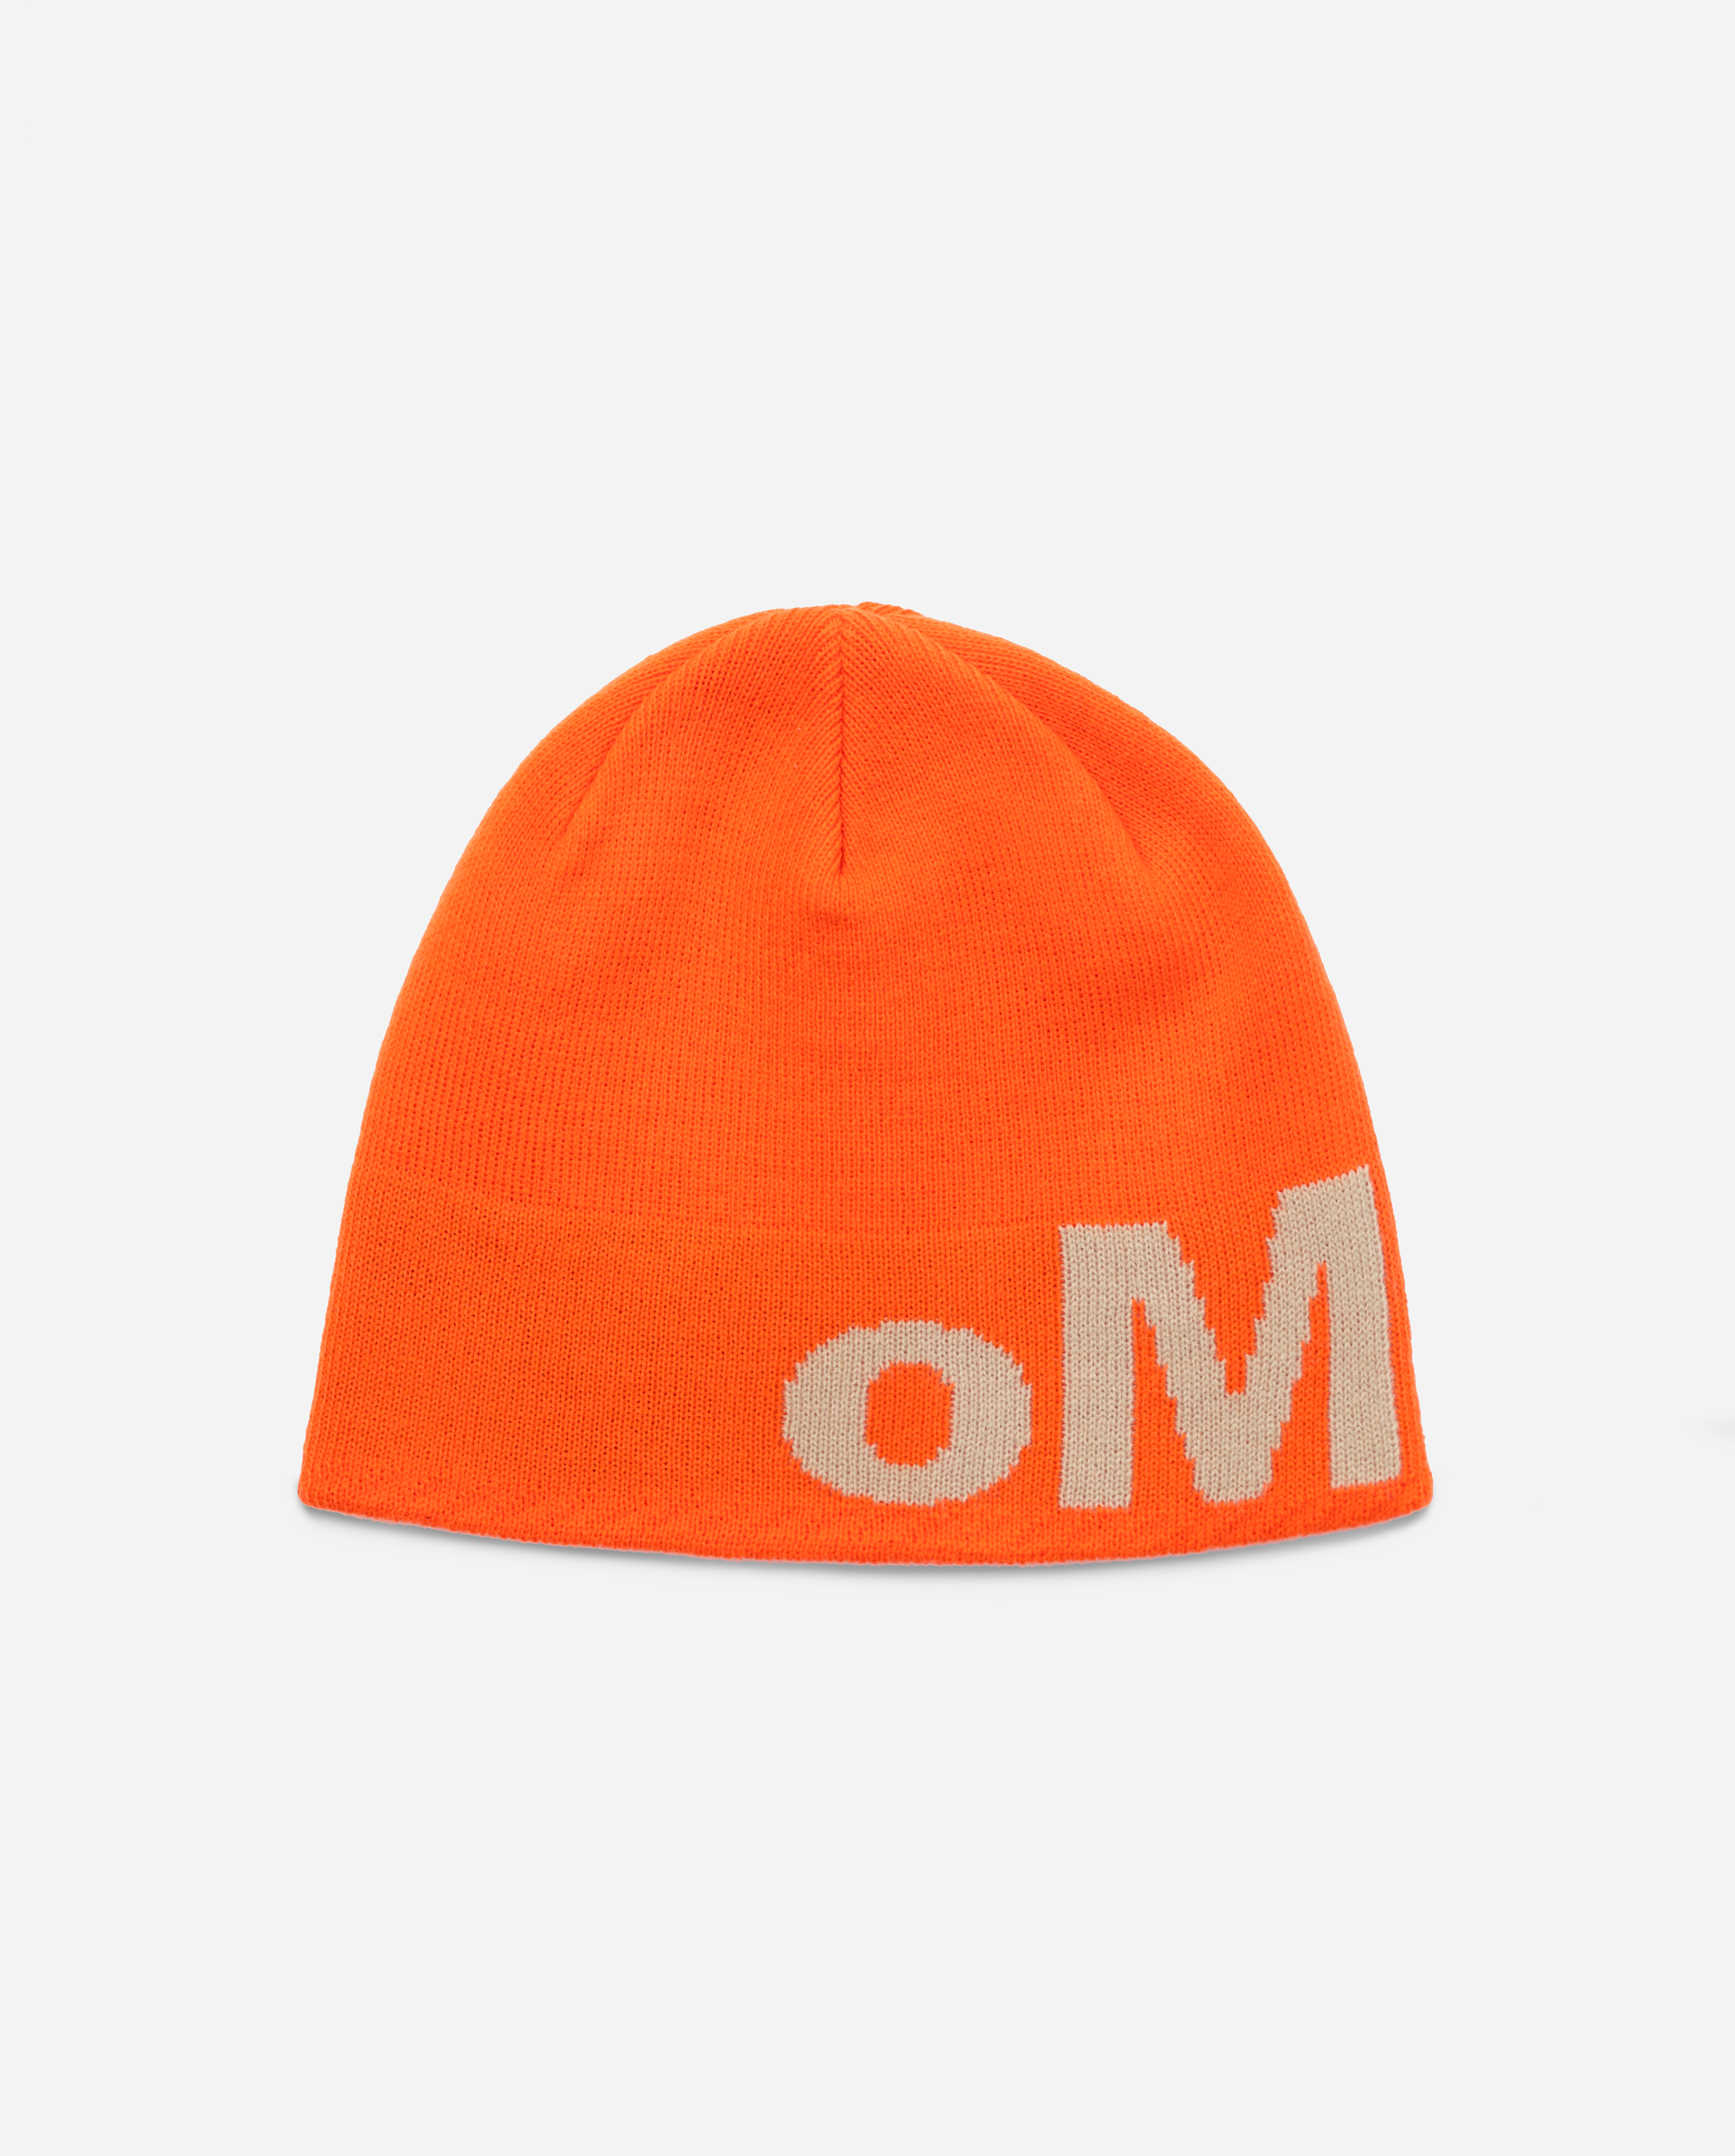 oMA OG SKULL CAP (ORANGE/CREAM)